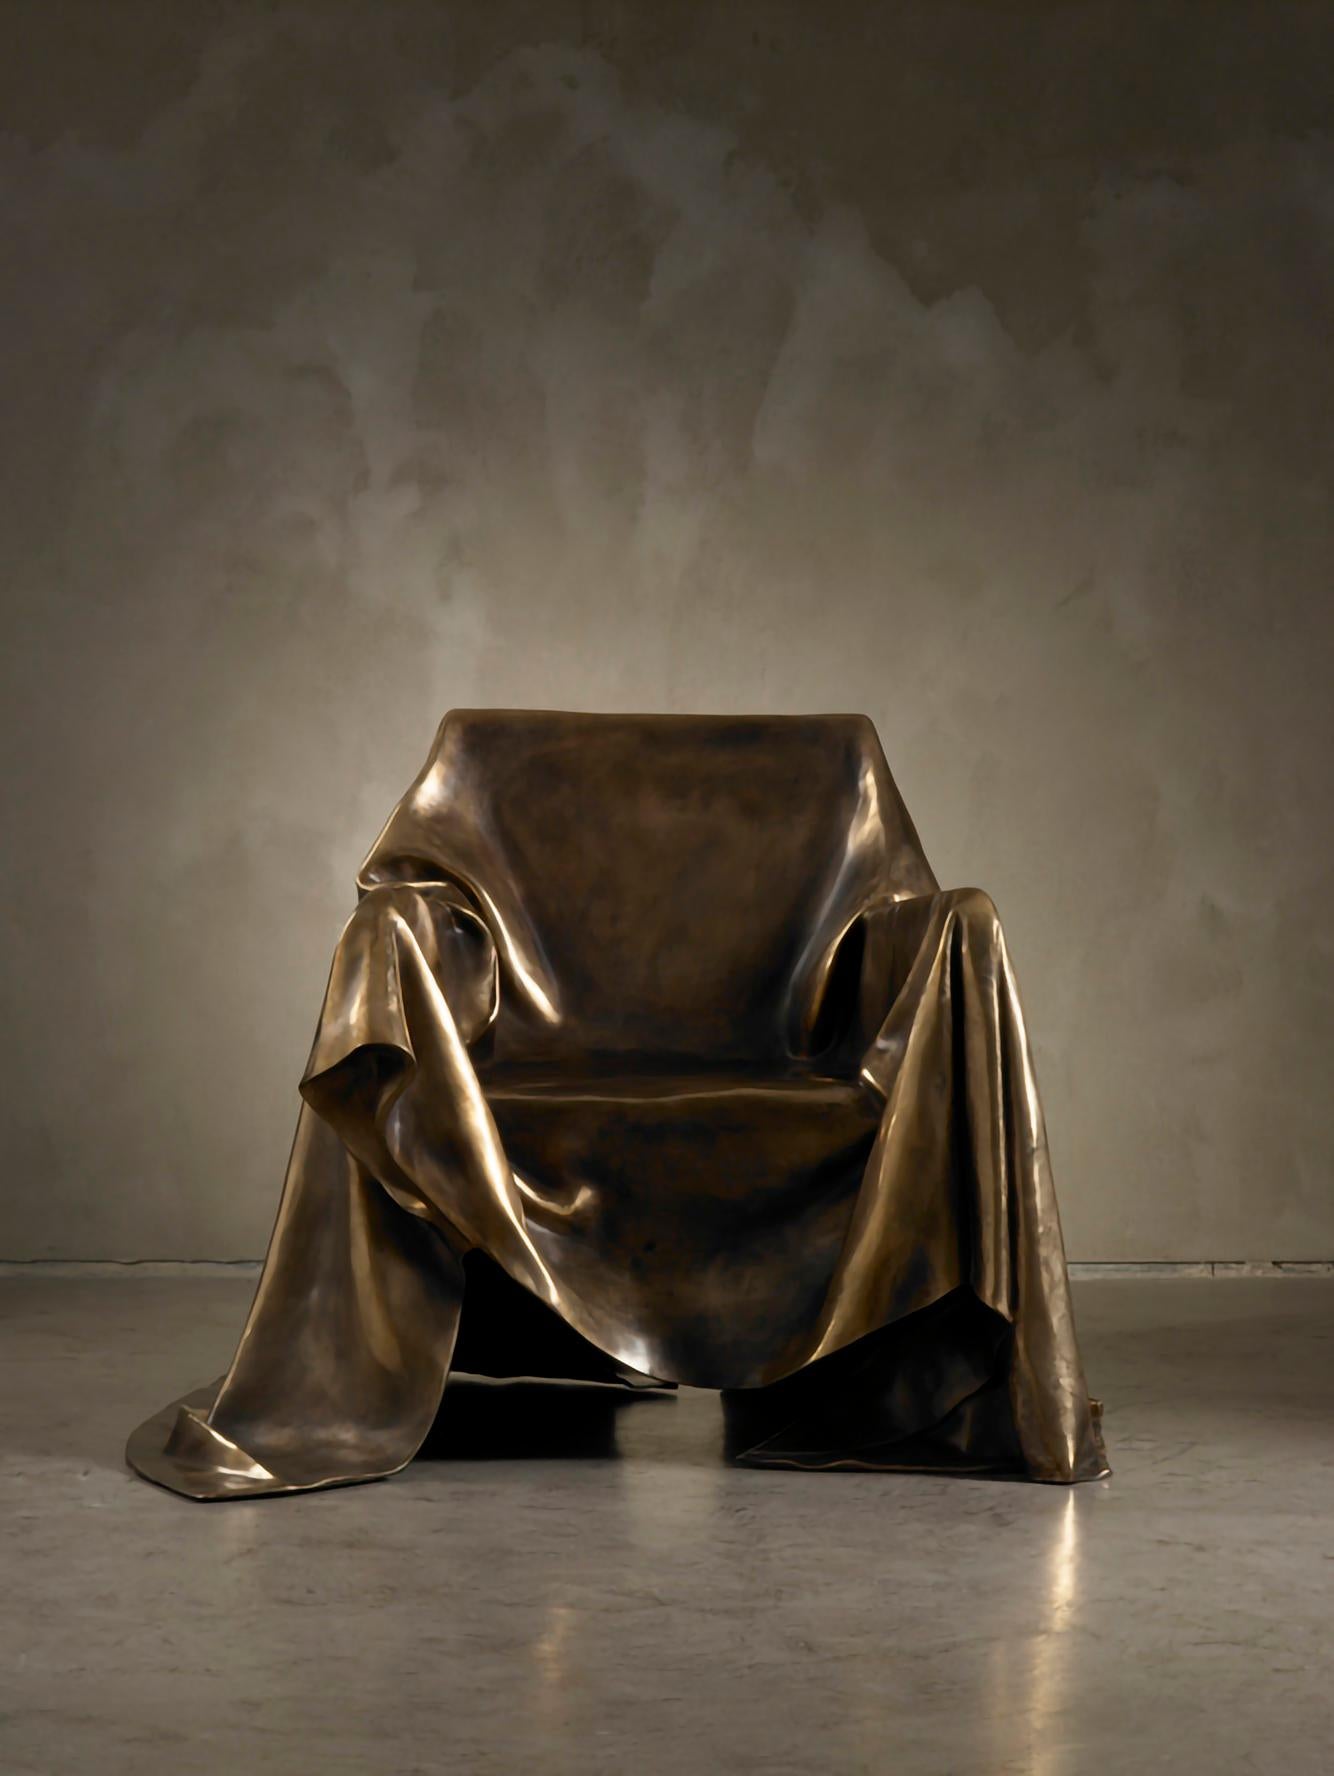 Außergewöhnlicher Sessel in einer limitierten Auflage von 9 Stück, hergestellt im Wachsausschmelzverfahren in Bronze für Dilmos Milano. Der Künstler Andrea Salvetti ließ sich von der Haltung der Madonna mit Christus in der berühmten Pietà-Skulptur